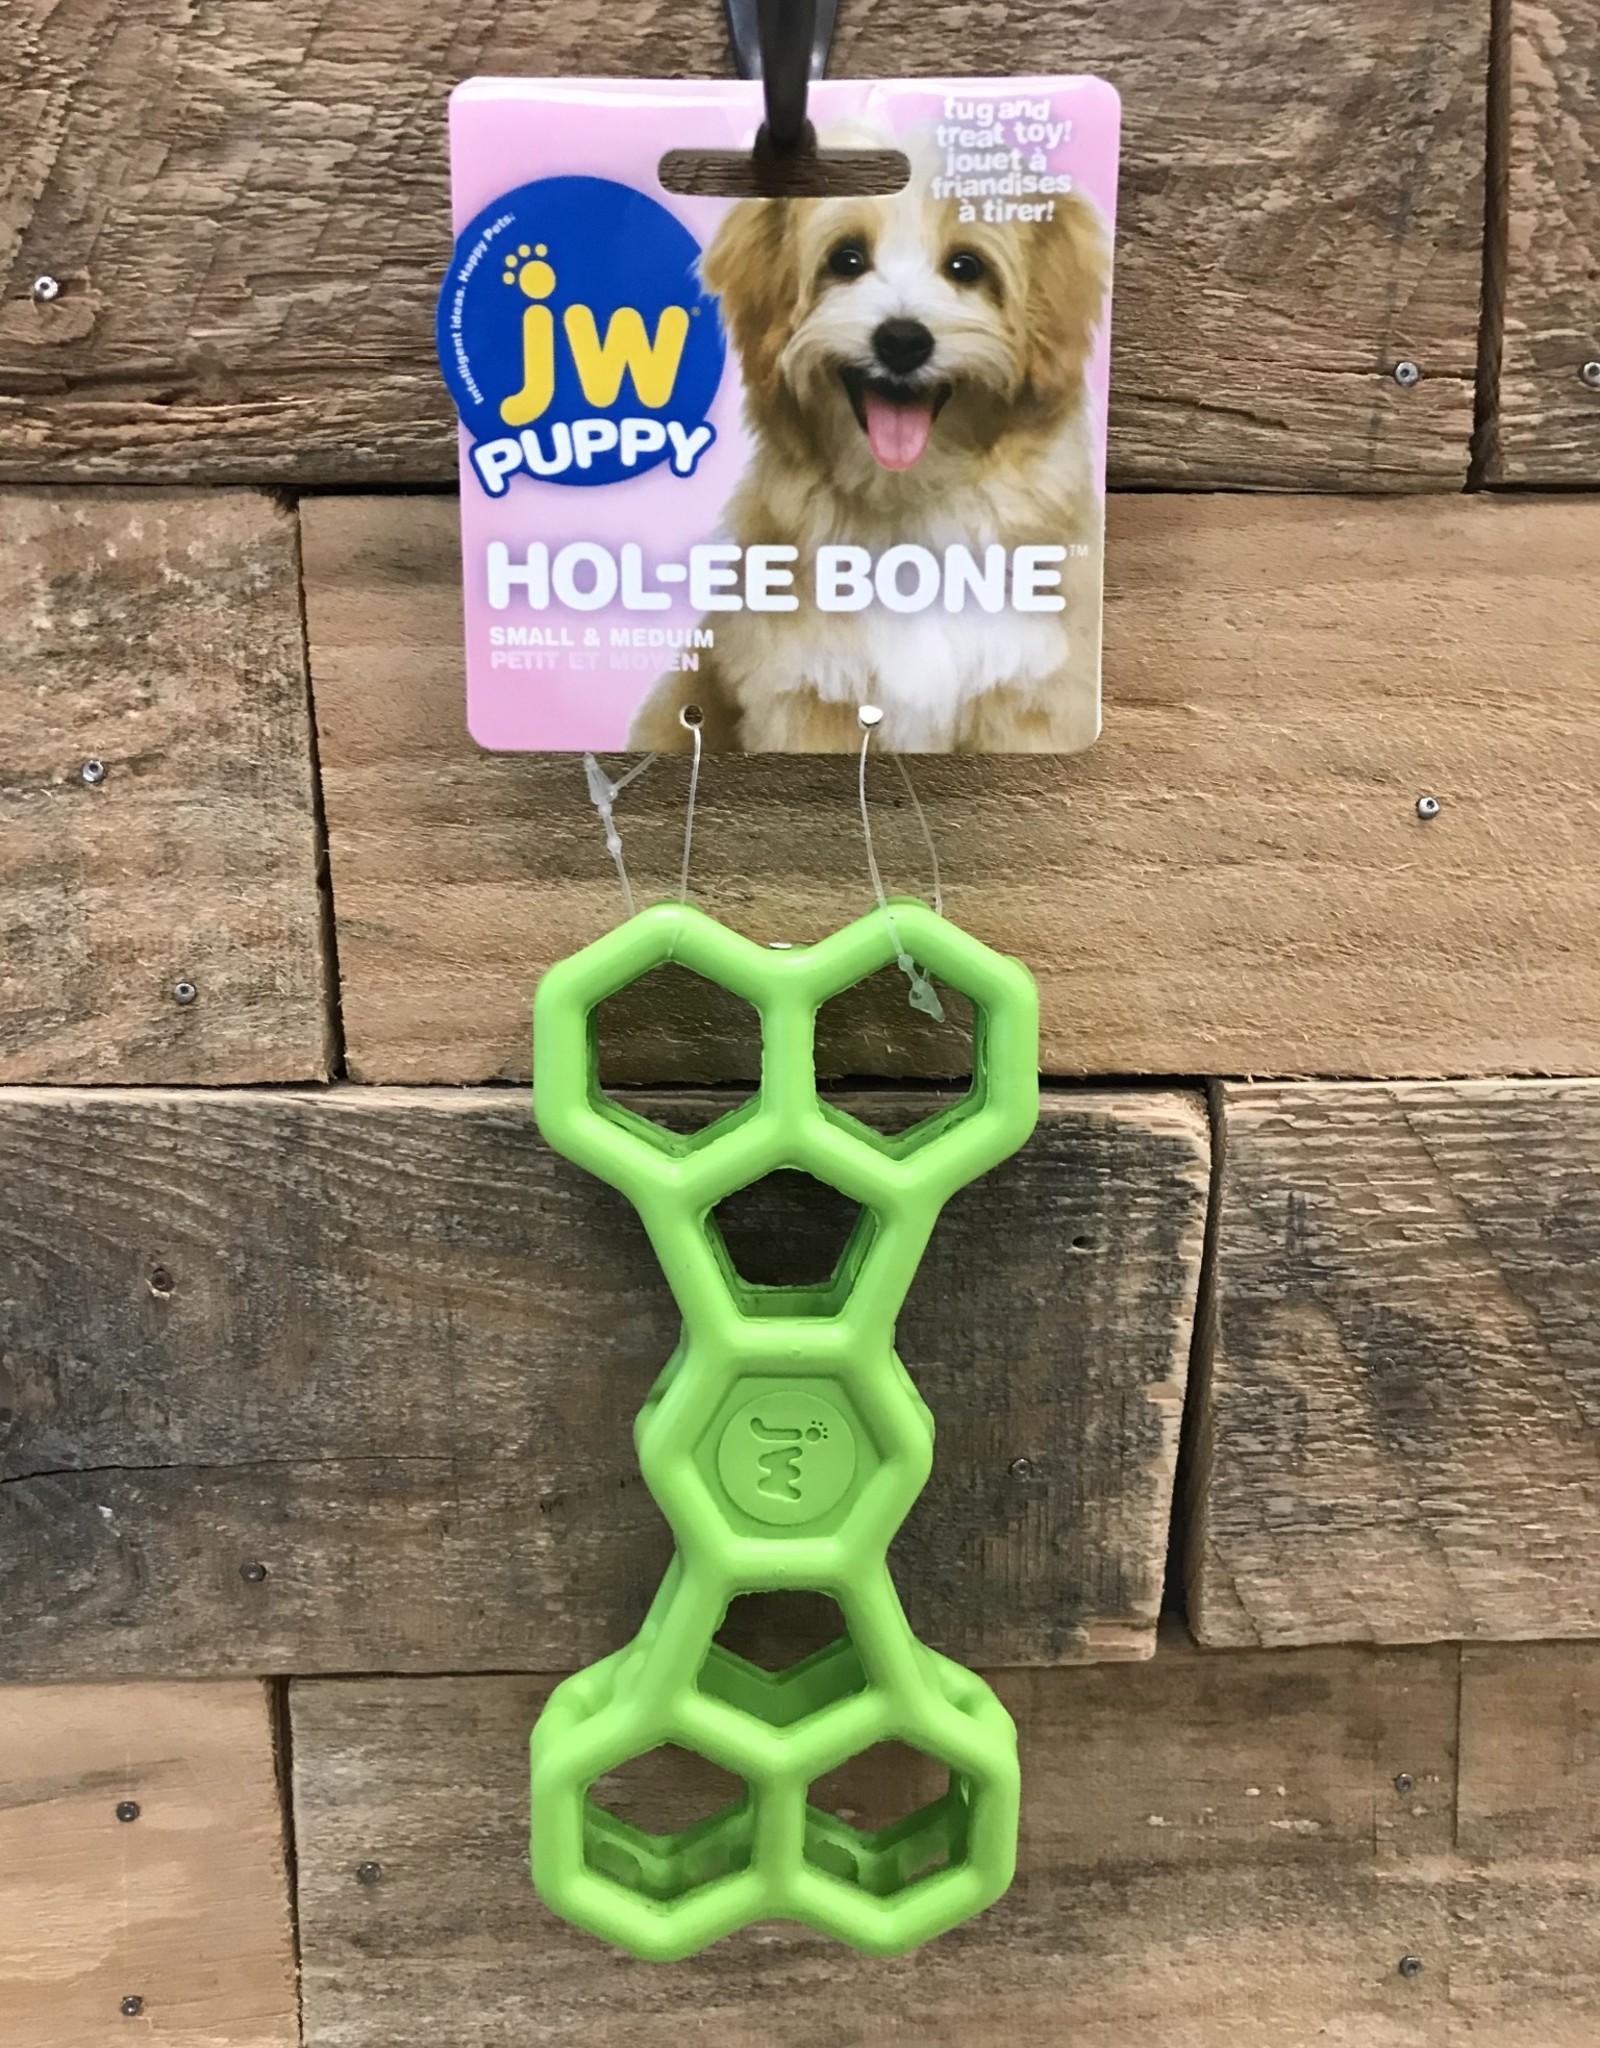 JW JW Puppy Hol-ee Bone Small Assorted